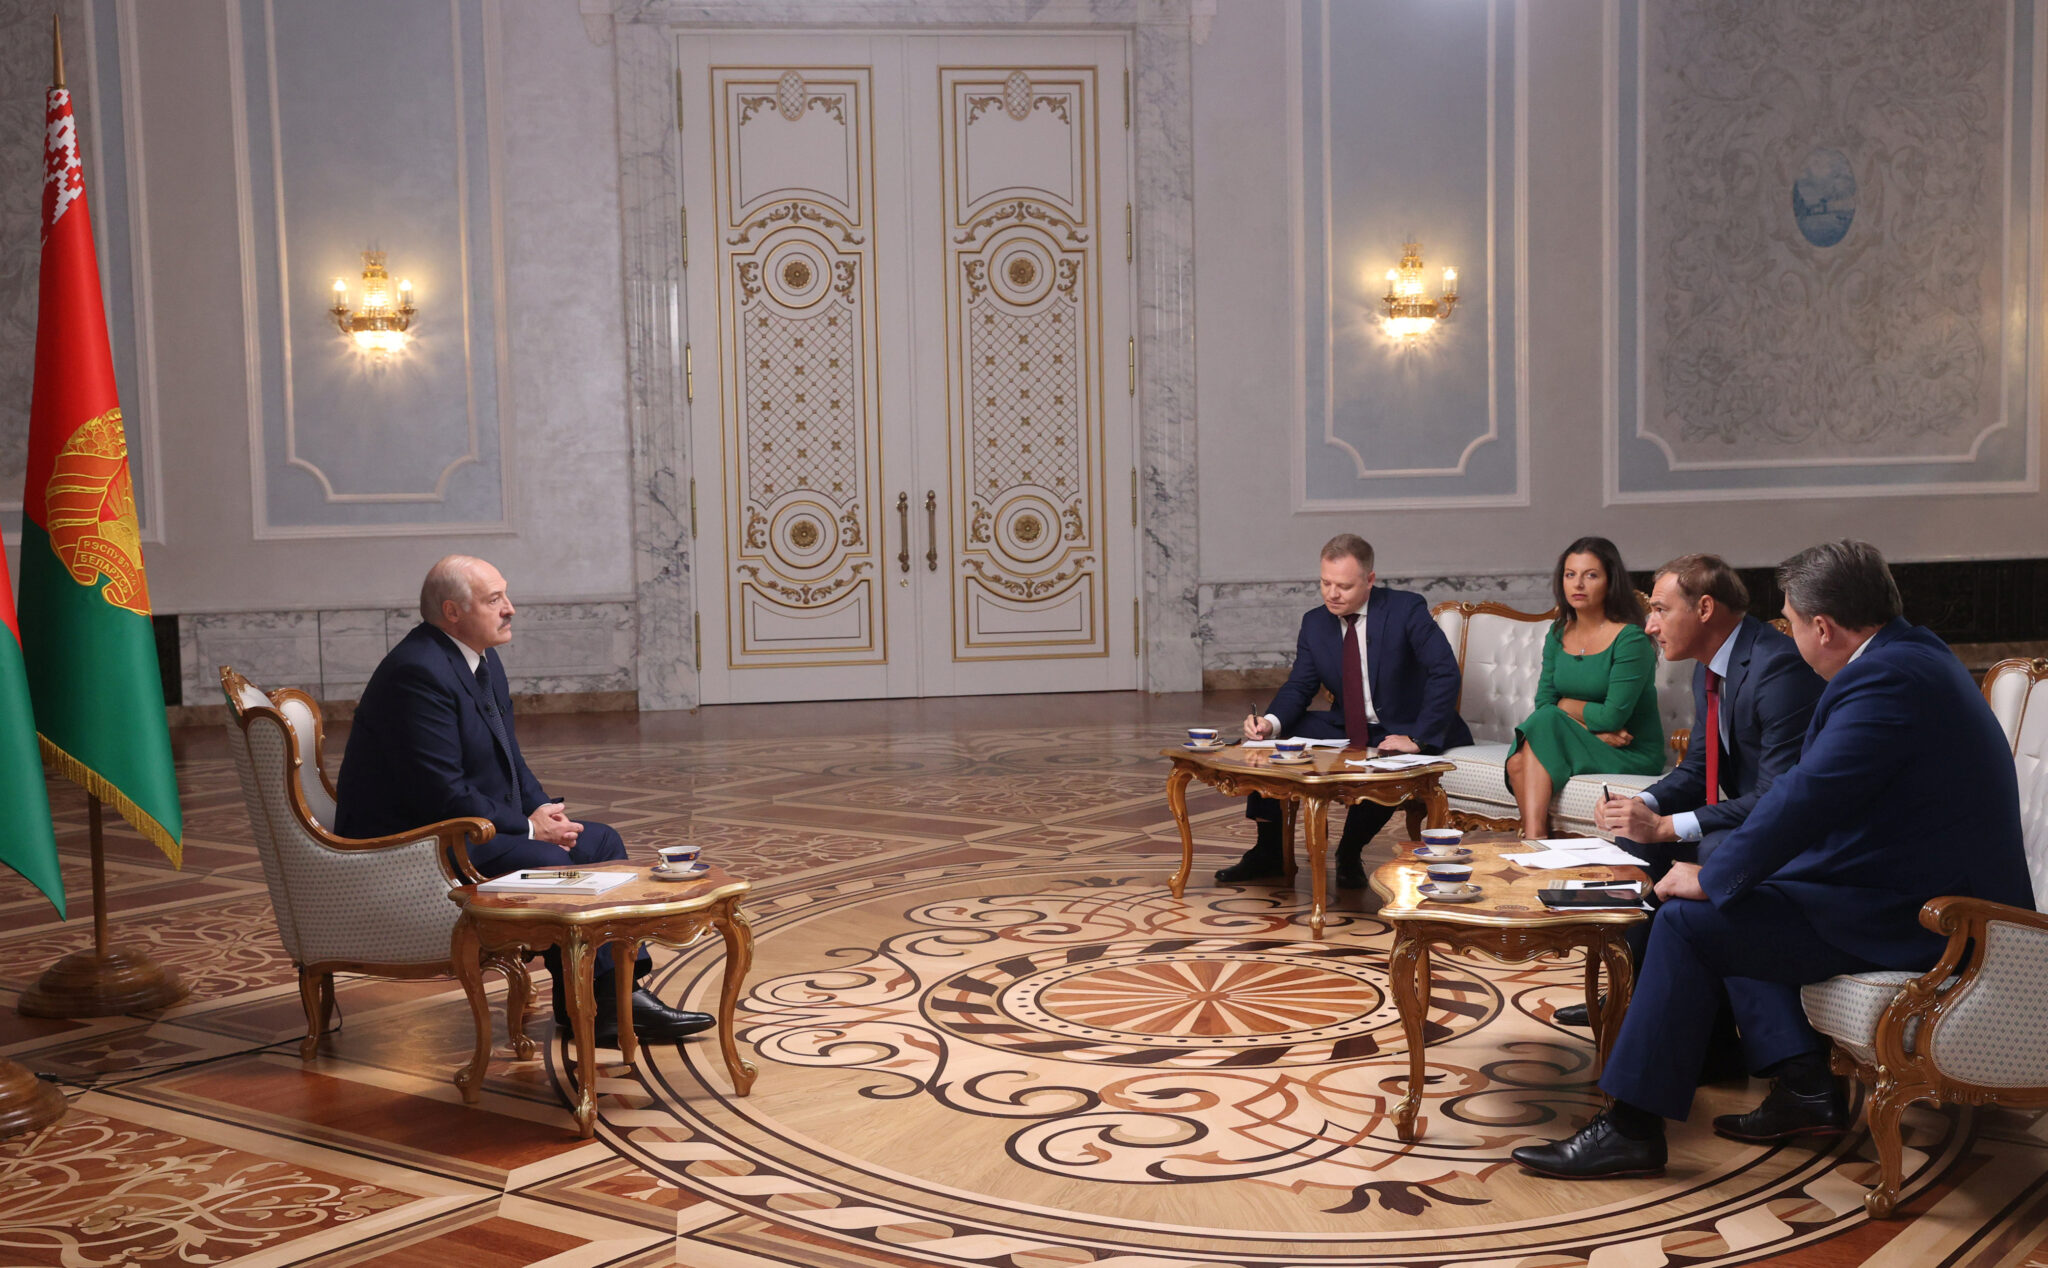 Лукашенко на интервью с представителями российских СМИ. Фото Nikolai Petrov/BelTA/Handout via REUTERS/Scanpix/Leta